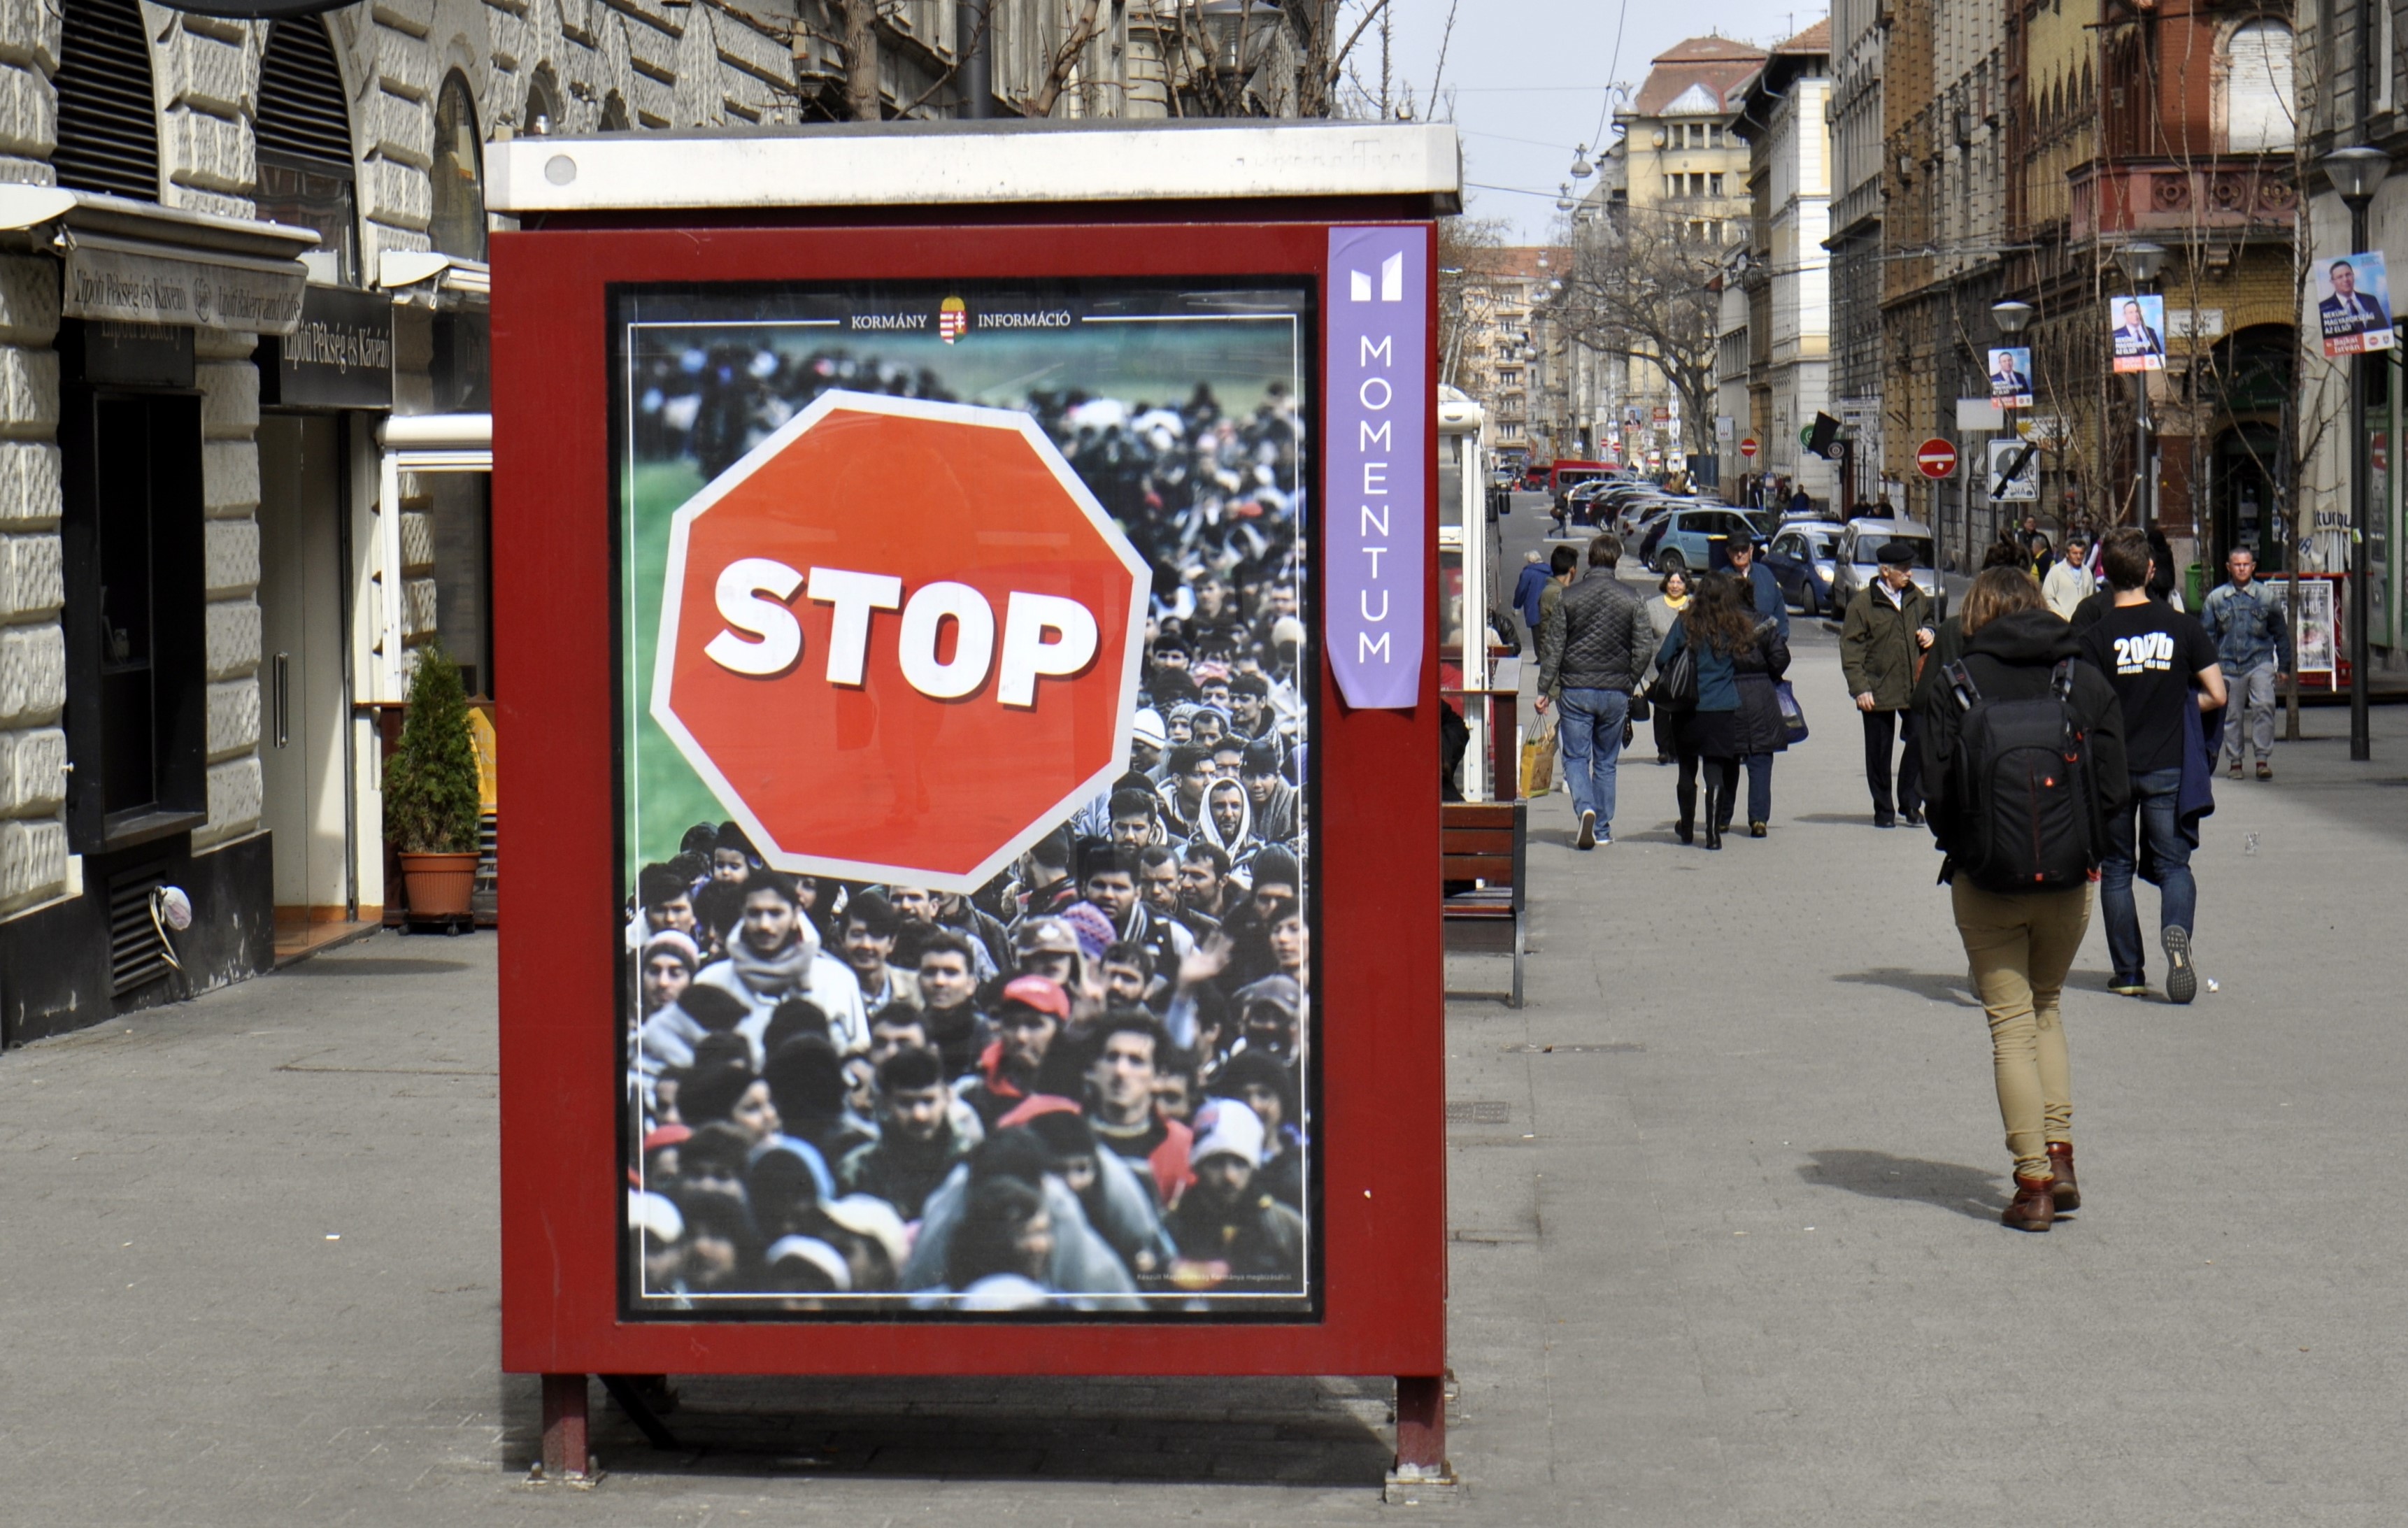 Sem a közösségi média, sem a magyar jogszabályok nem állítják meg a gyűlöletbeszédet